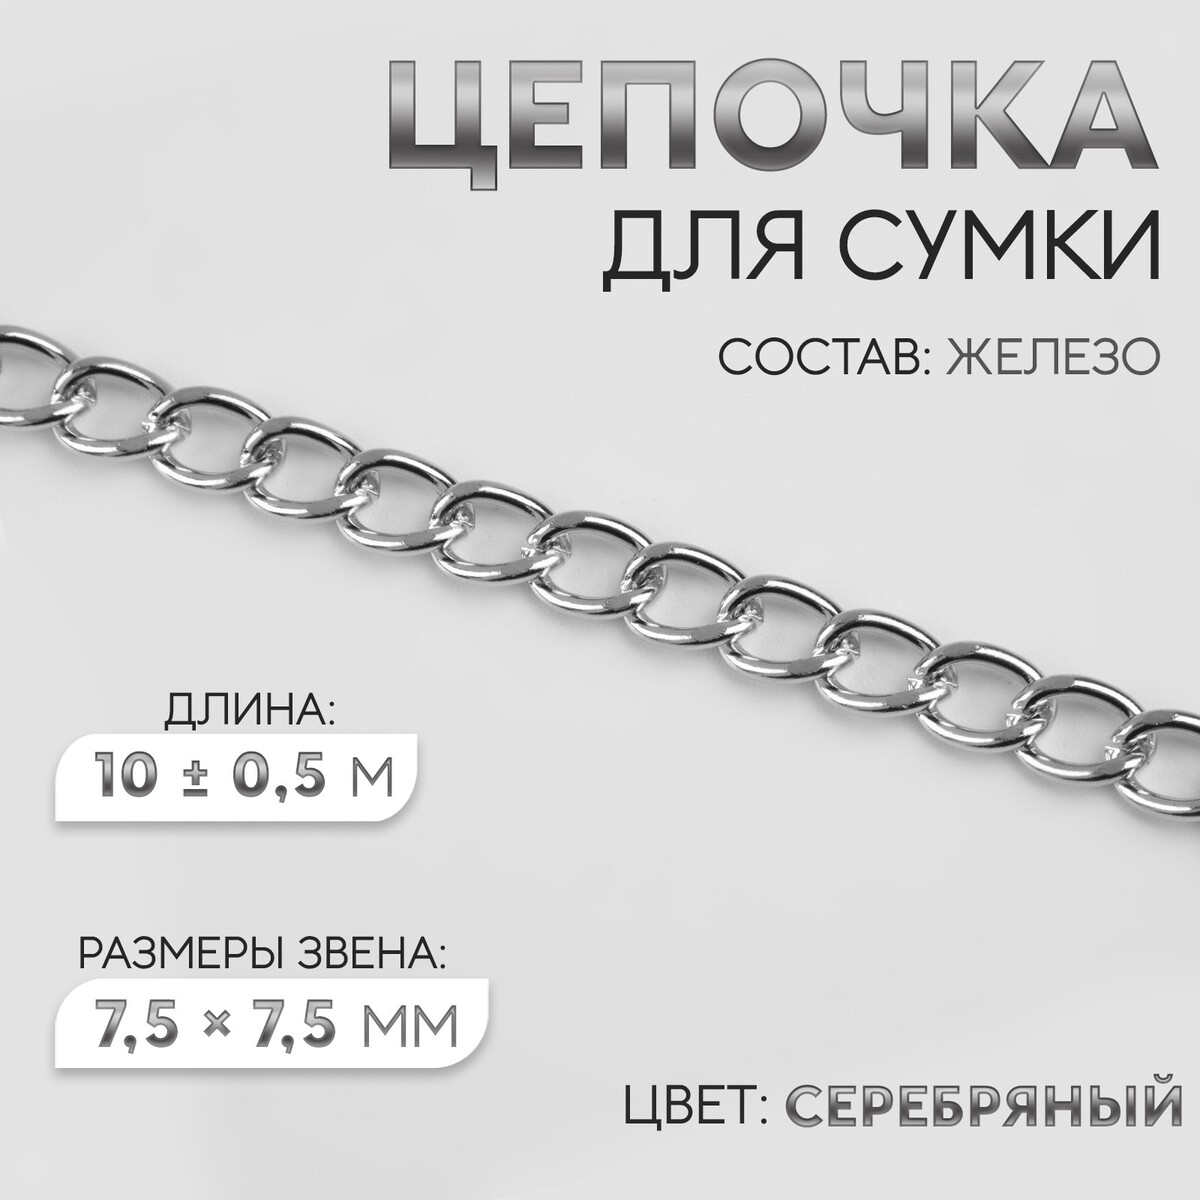 Цепочка для сумки, железная, 7,5 × 7,5 мм, 10 ± 0,5 м, цвет серебряный цепочка для сумки железная d 7 мм 10 ± 0 5 м серебряный